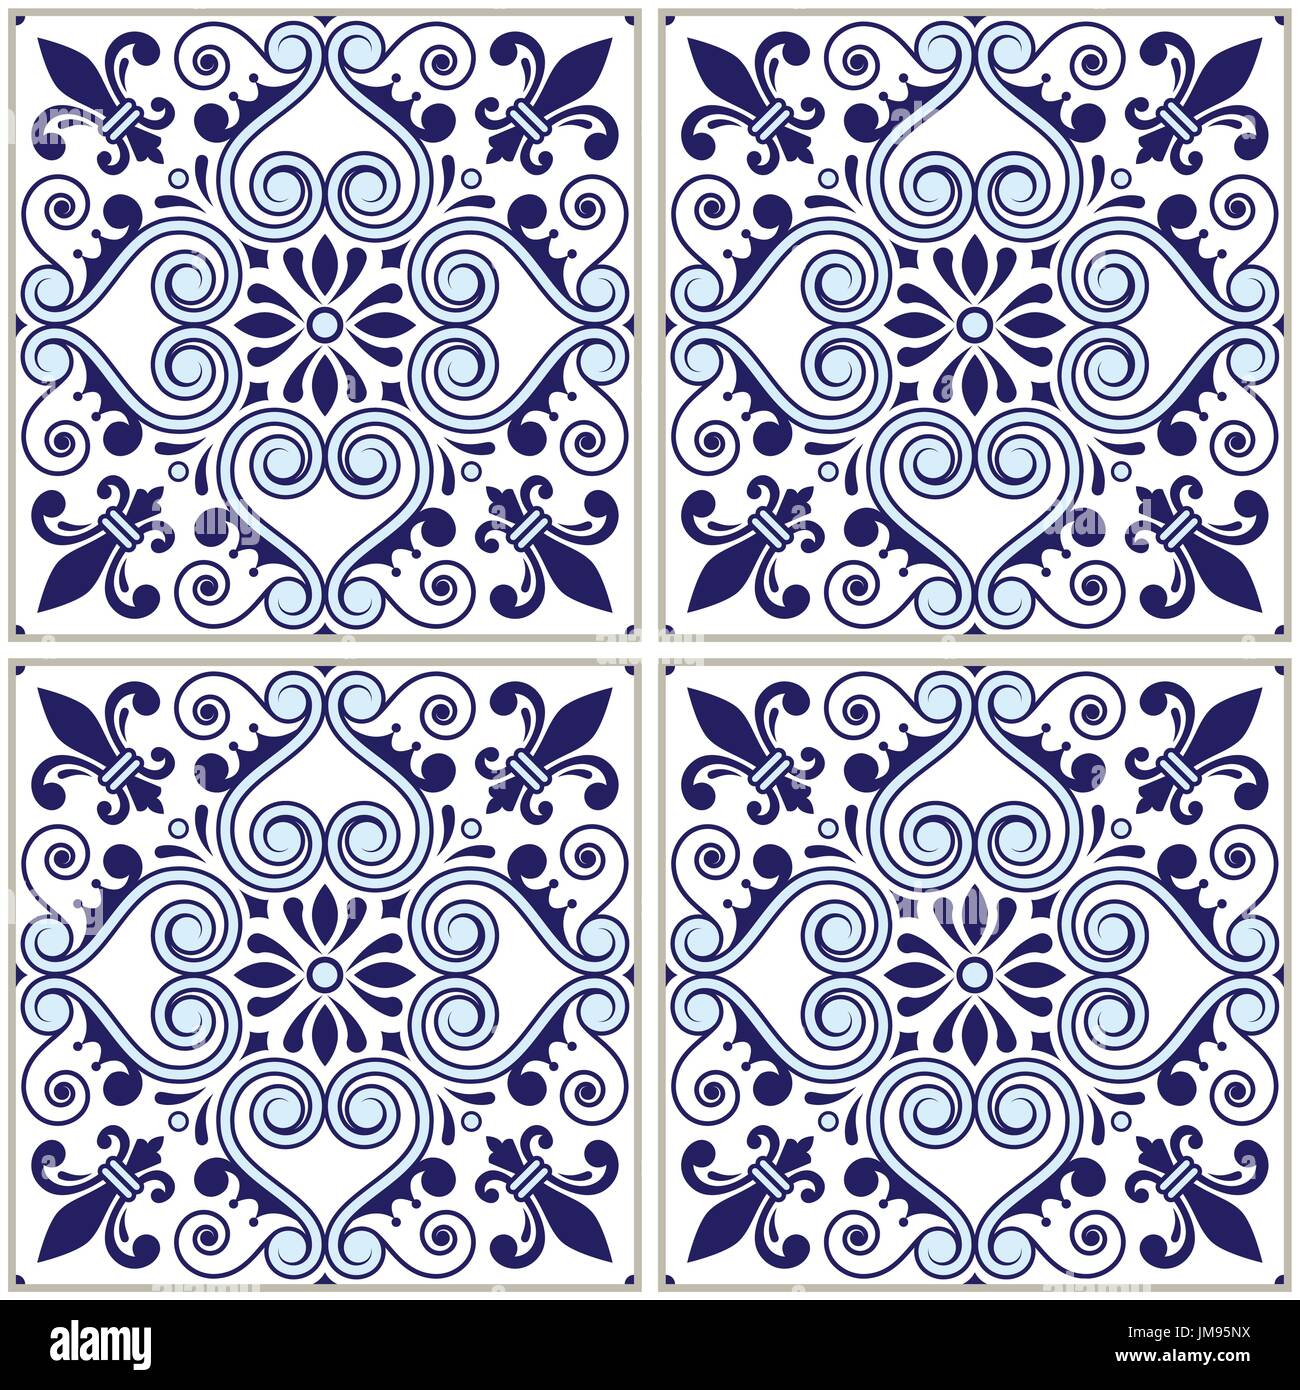 Motif carreaux portugais bleu marine azulejo - design, vecteur transparent fond bleu, vintage jeu de mosaïques Illustration de Vecteur